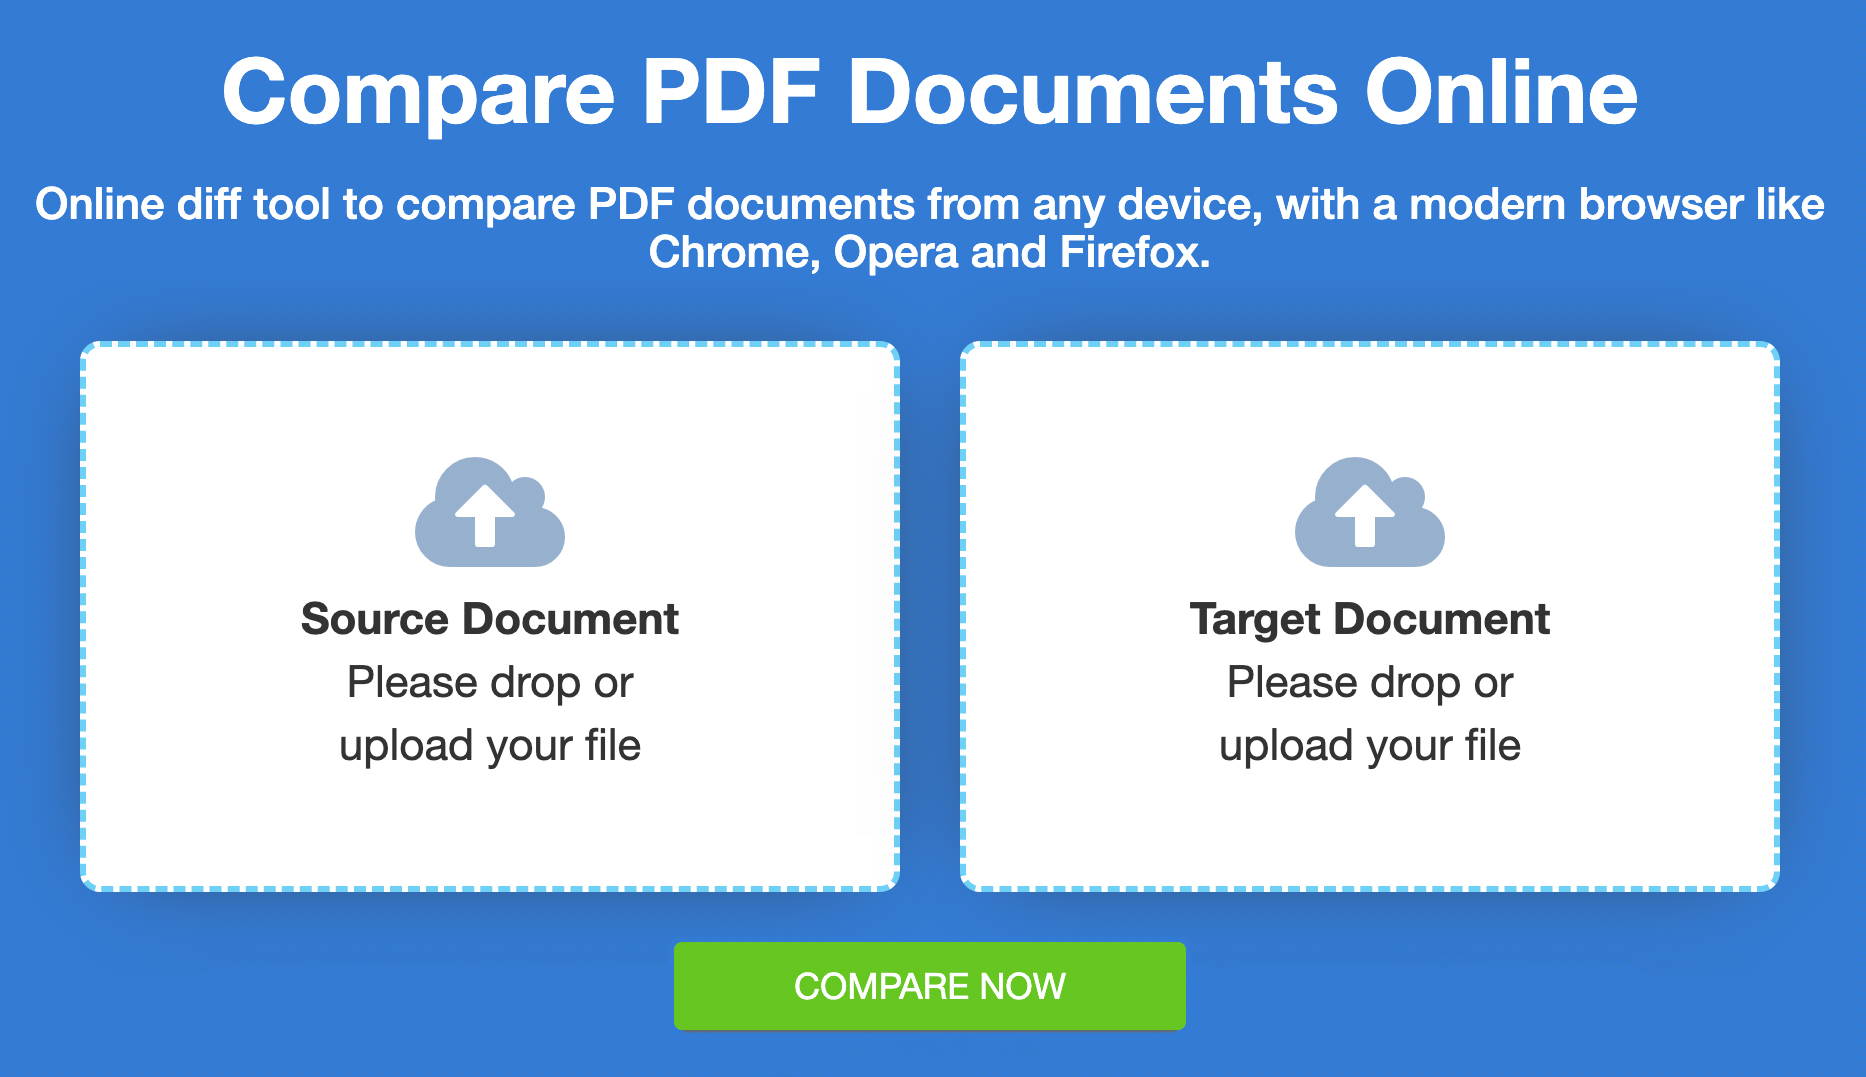 Comparar archivos PDF - Comparación gratuita en línea